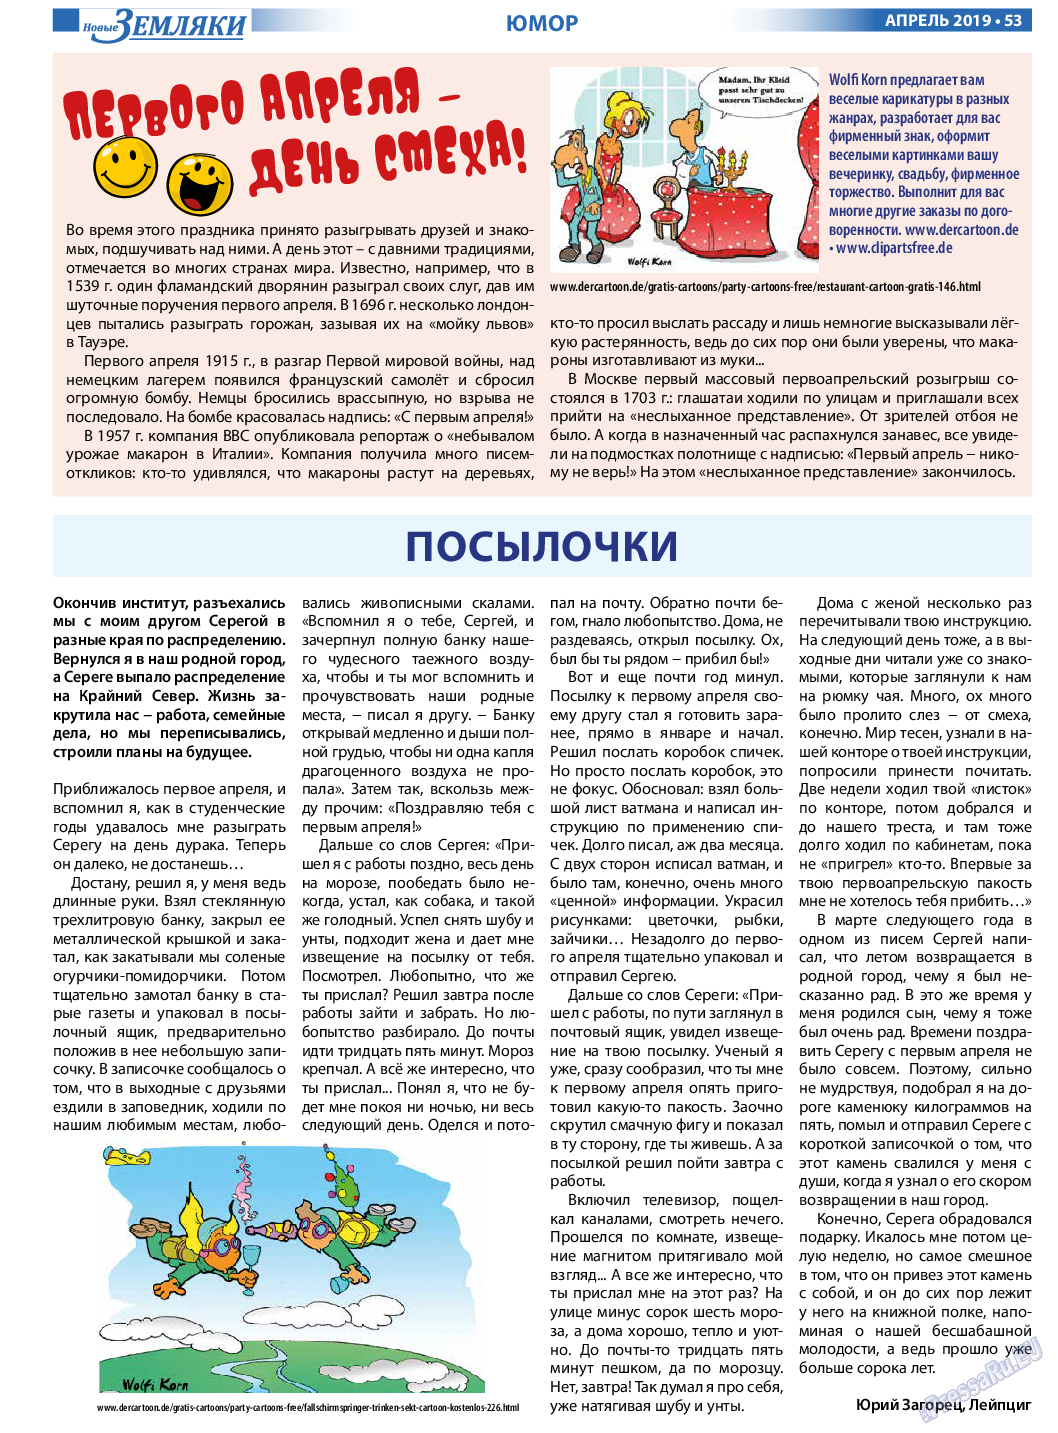 Новые Земляки (газета). 2019 год, номер 4, стр. 53